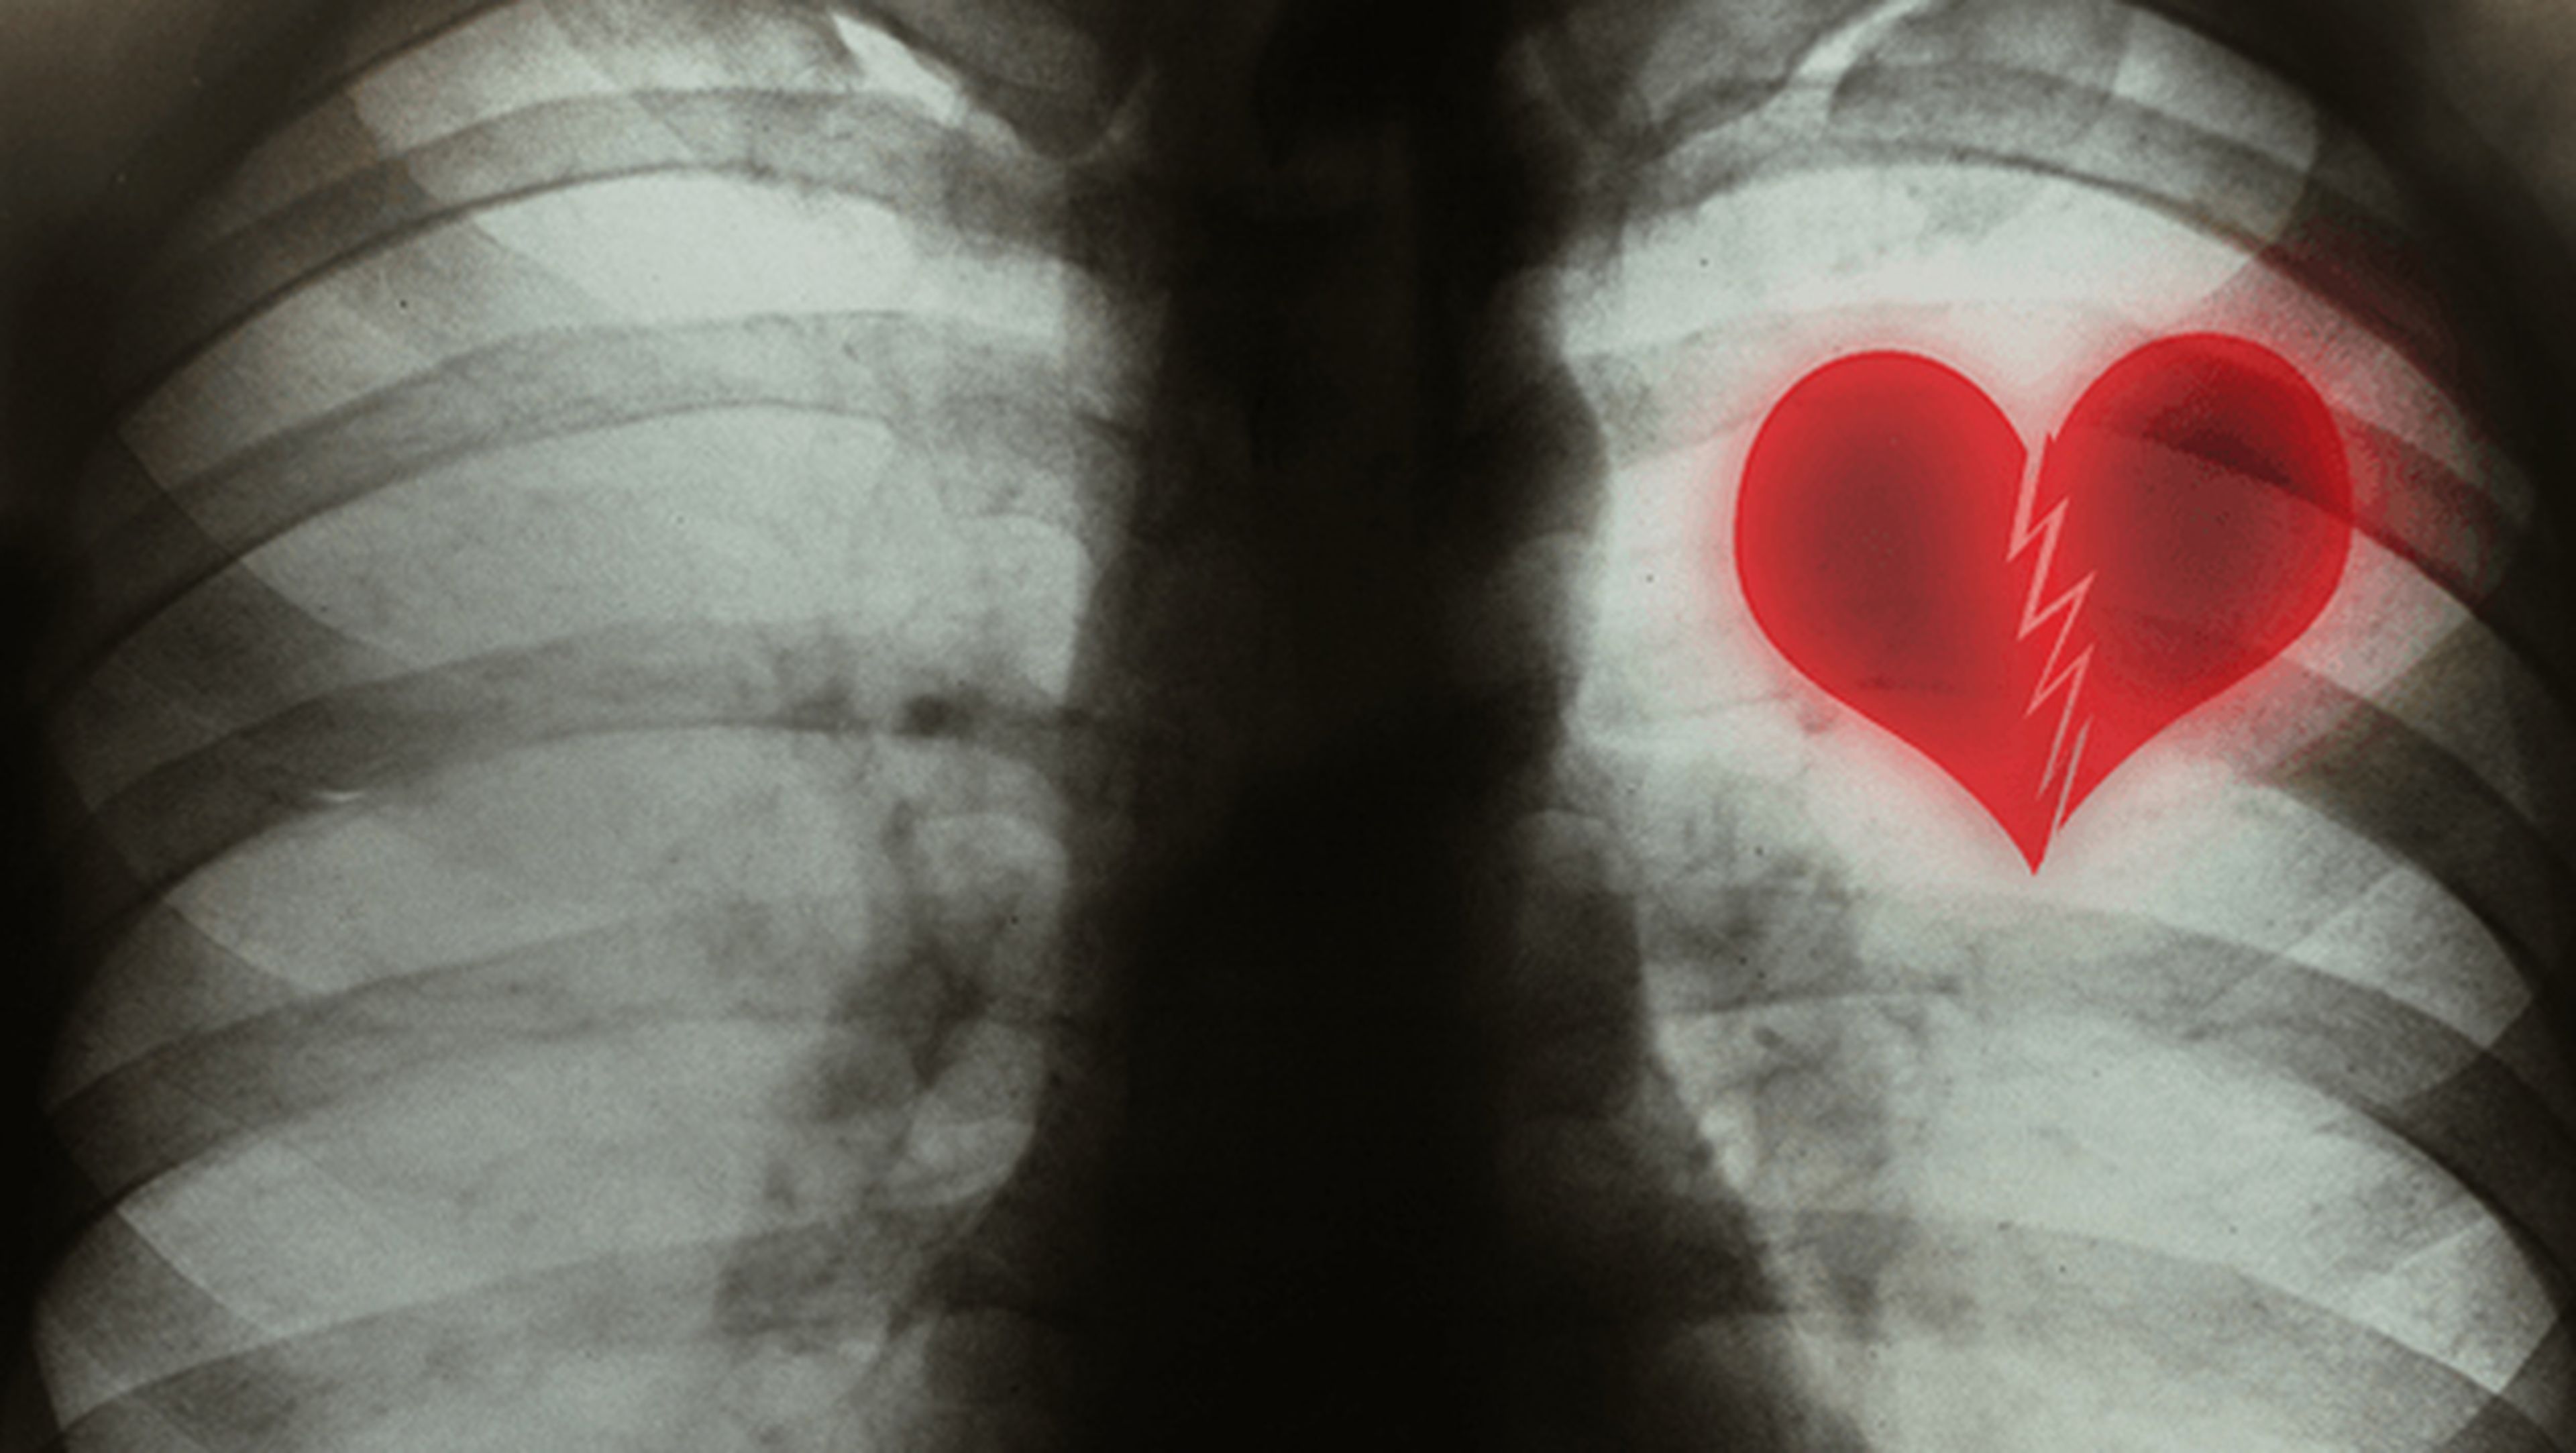 Sindrome del corazón roto o takotsubo cardiomiopatía